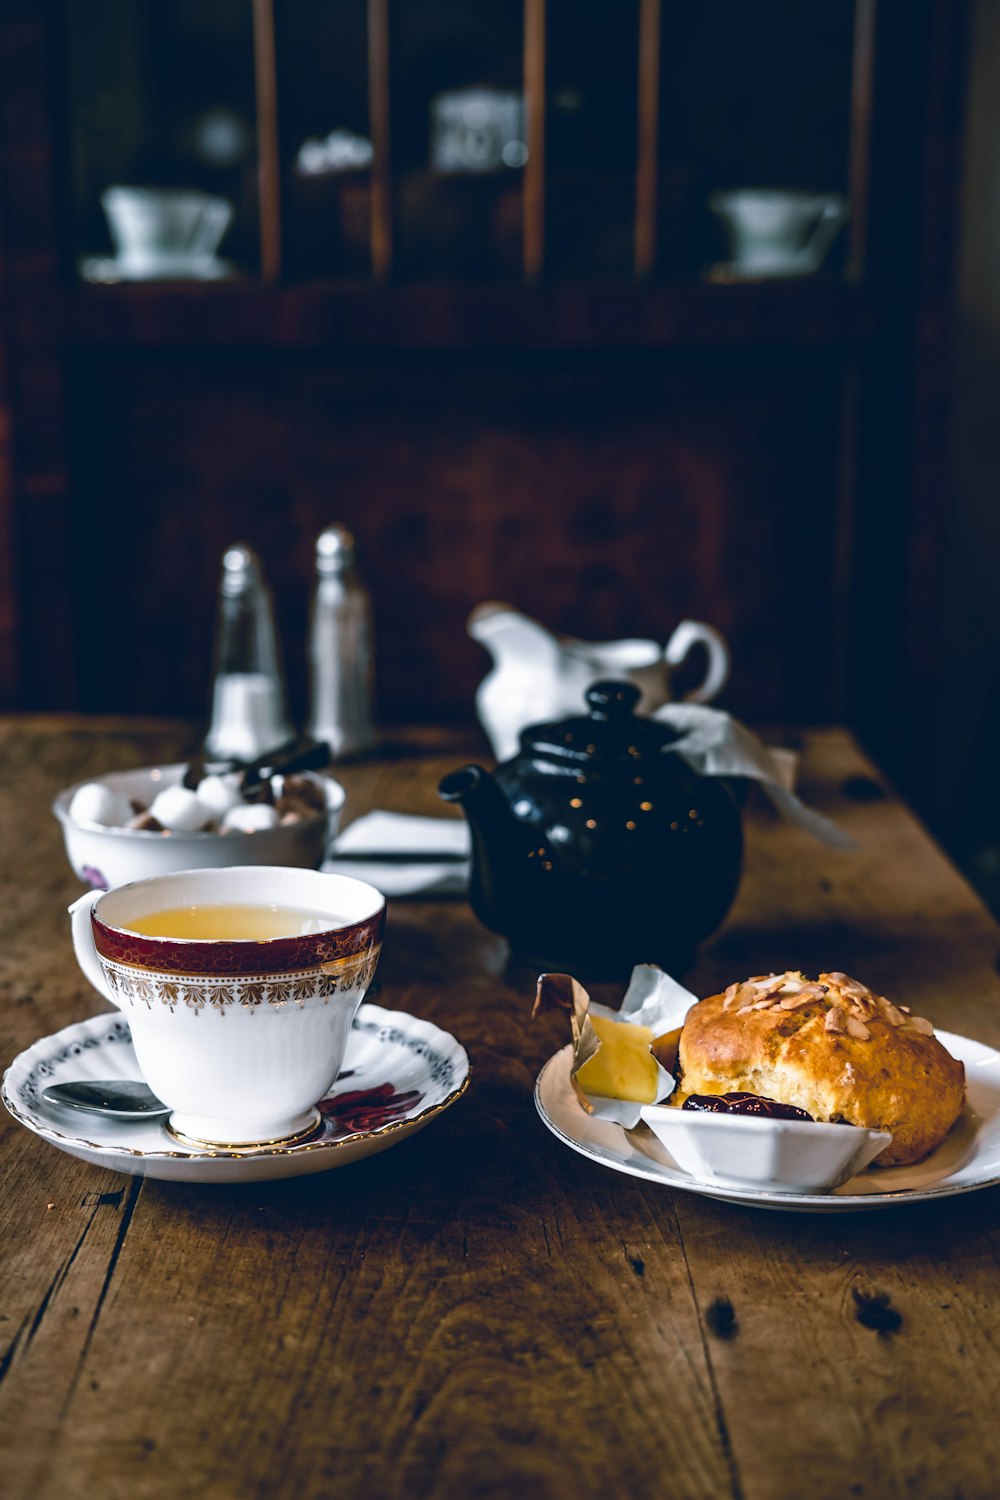 Kaffeekanne neben Brot auf Teller und Teekanne auf dem Tisch